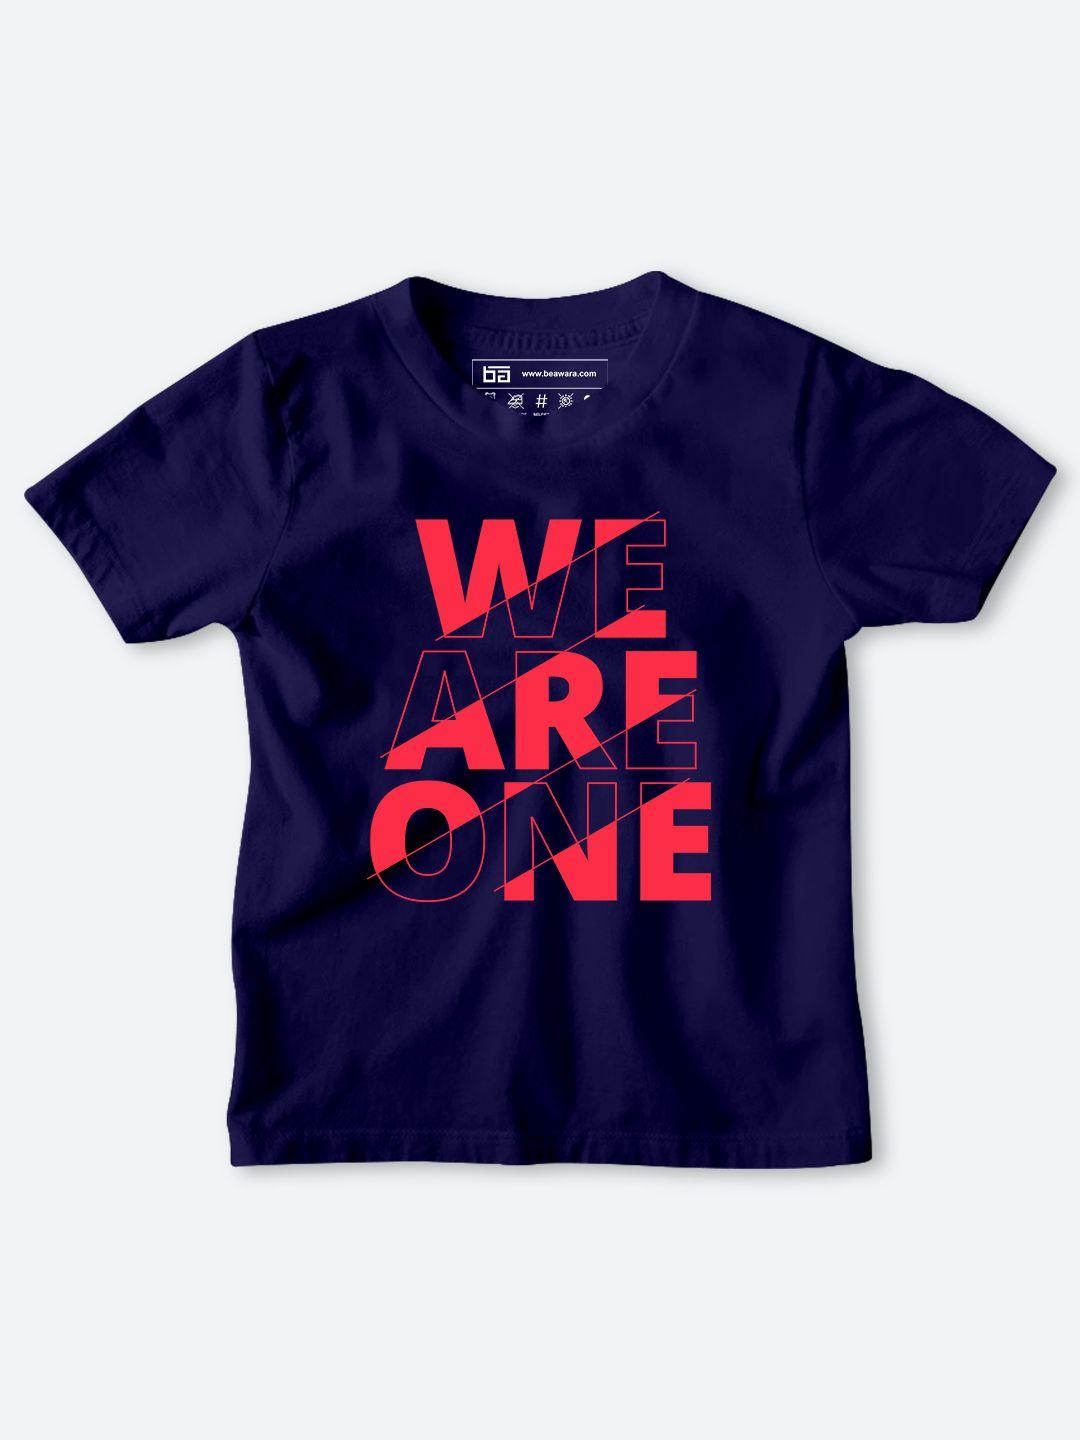 be awara kids navy blue & pink typography printed cotton t-shirt